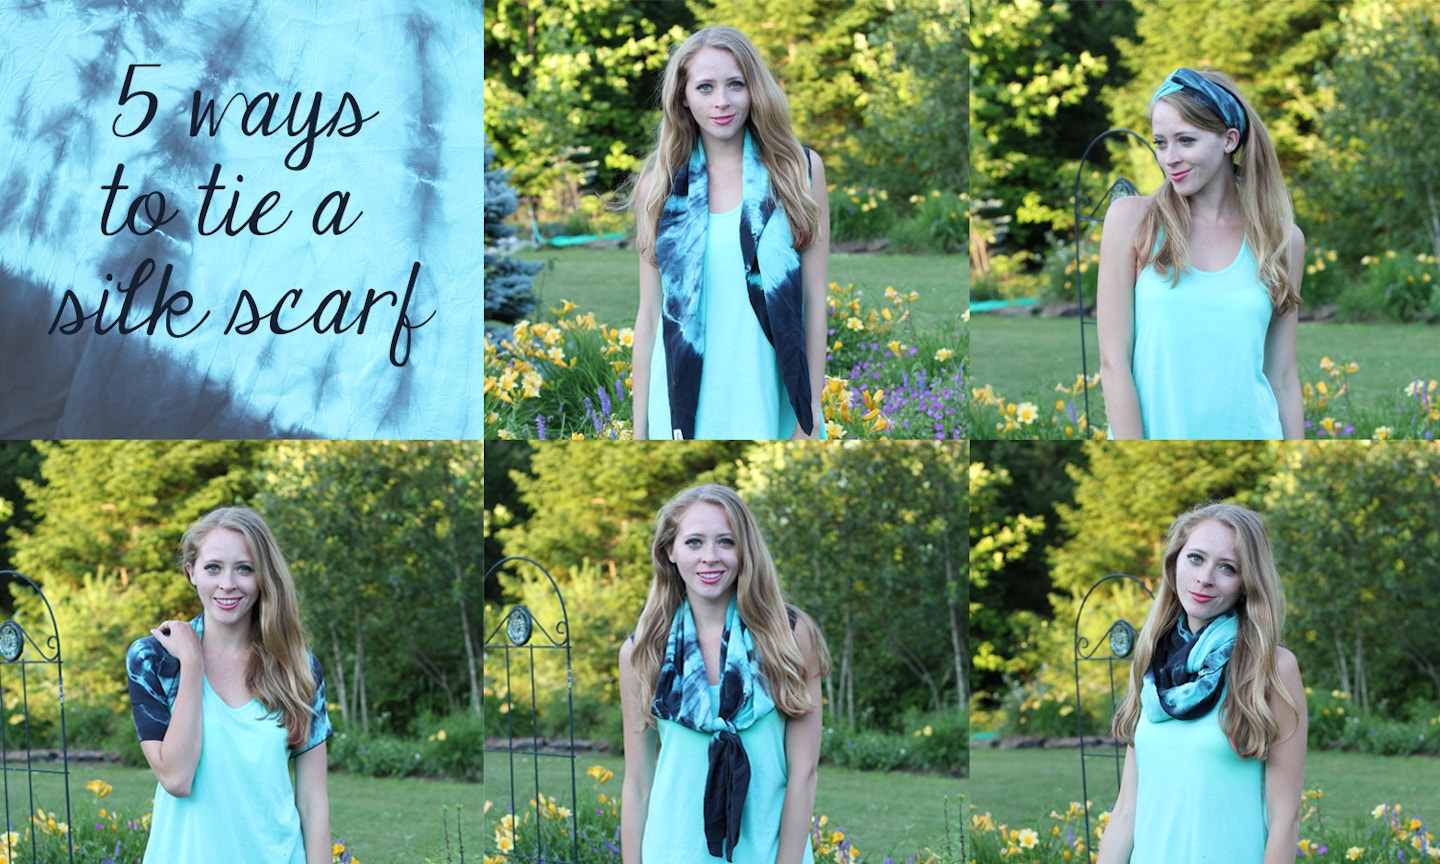 5 ways to tie a silk scarf in summer